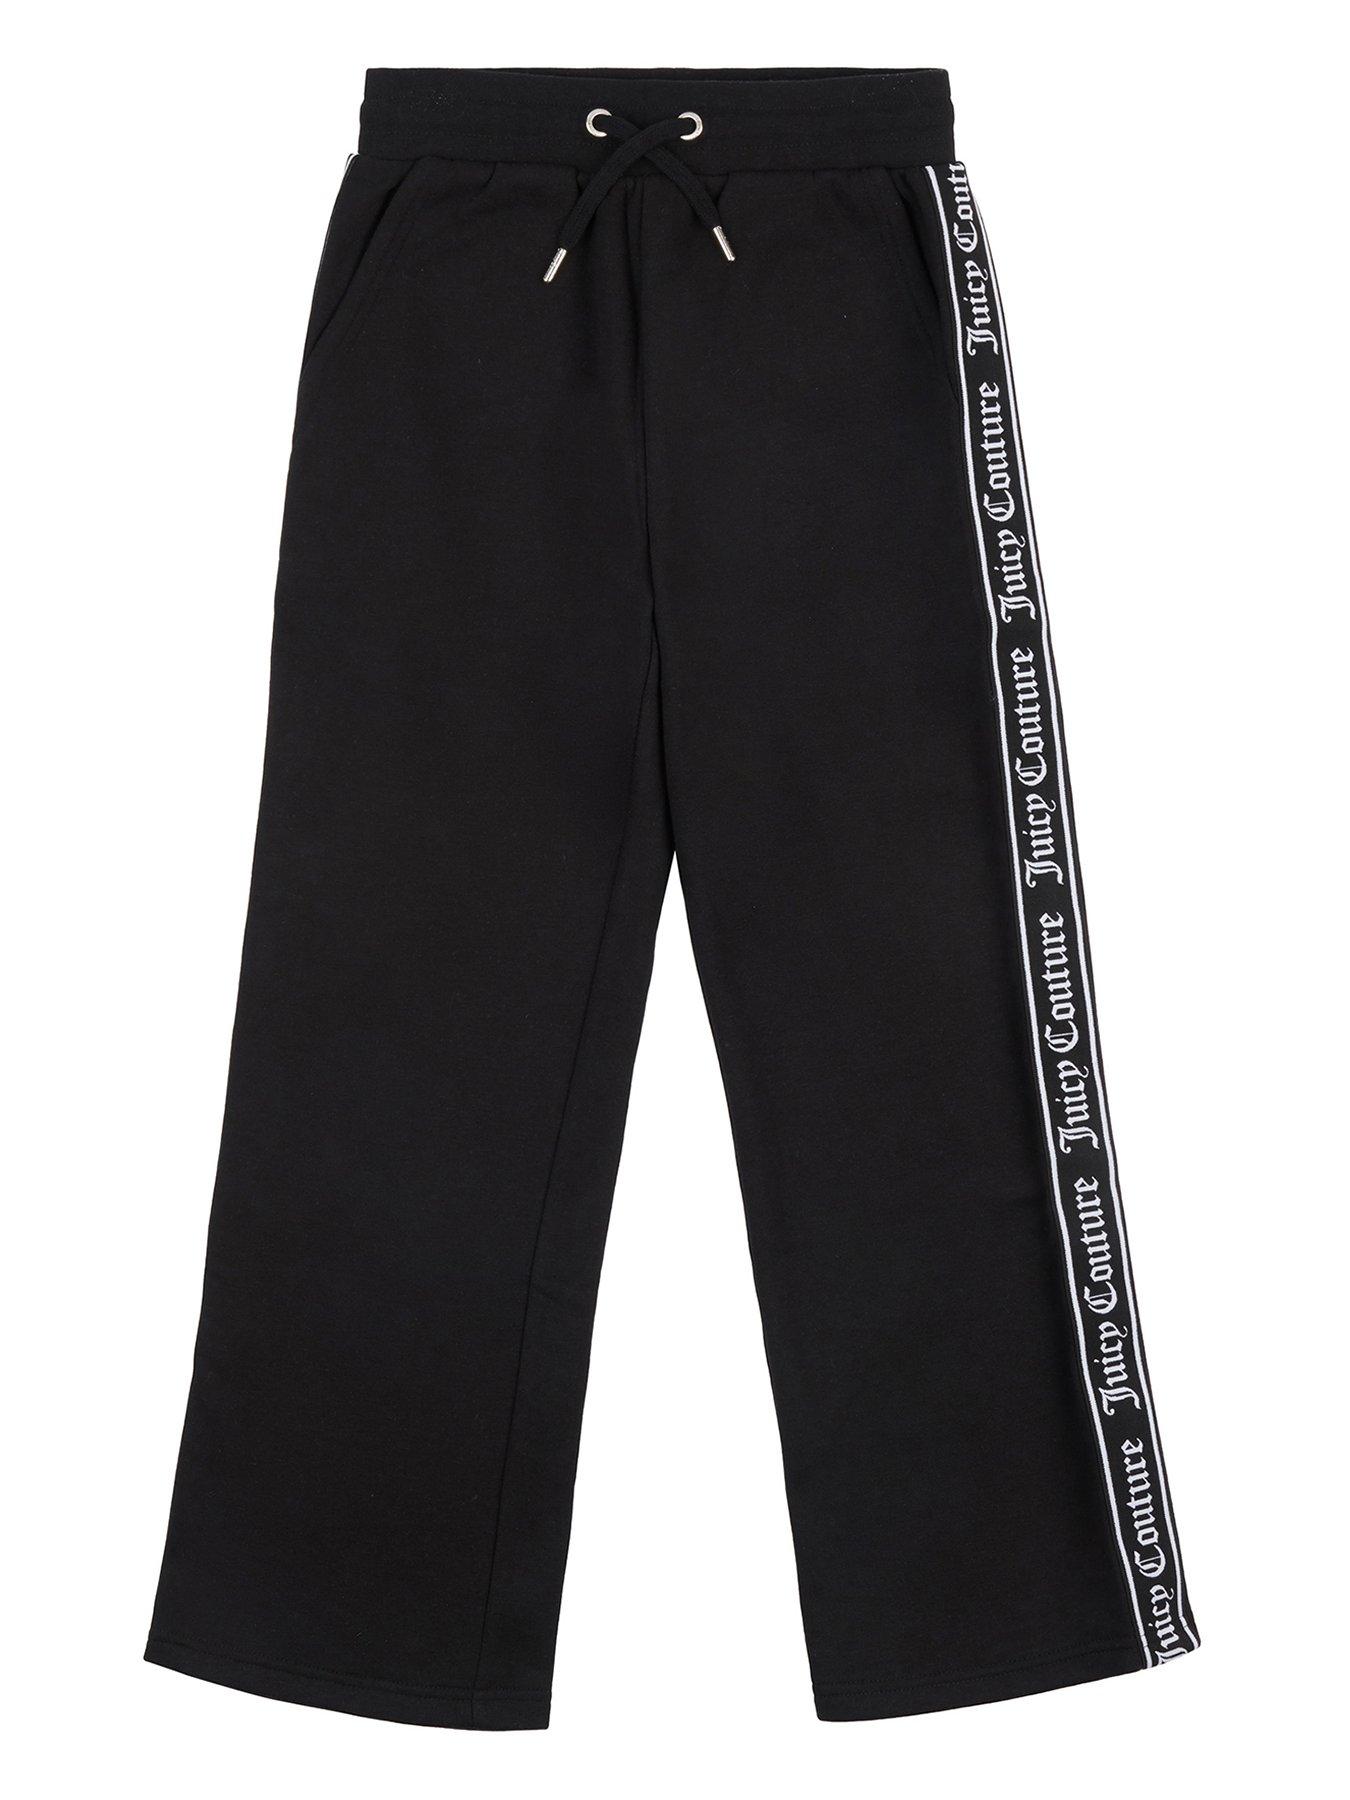 Juicy Couture Black Label Original Flare Velour Pants - 100% Exclusive